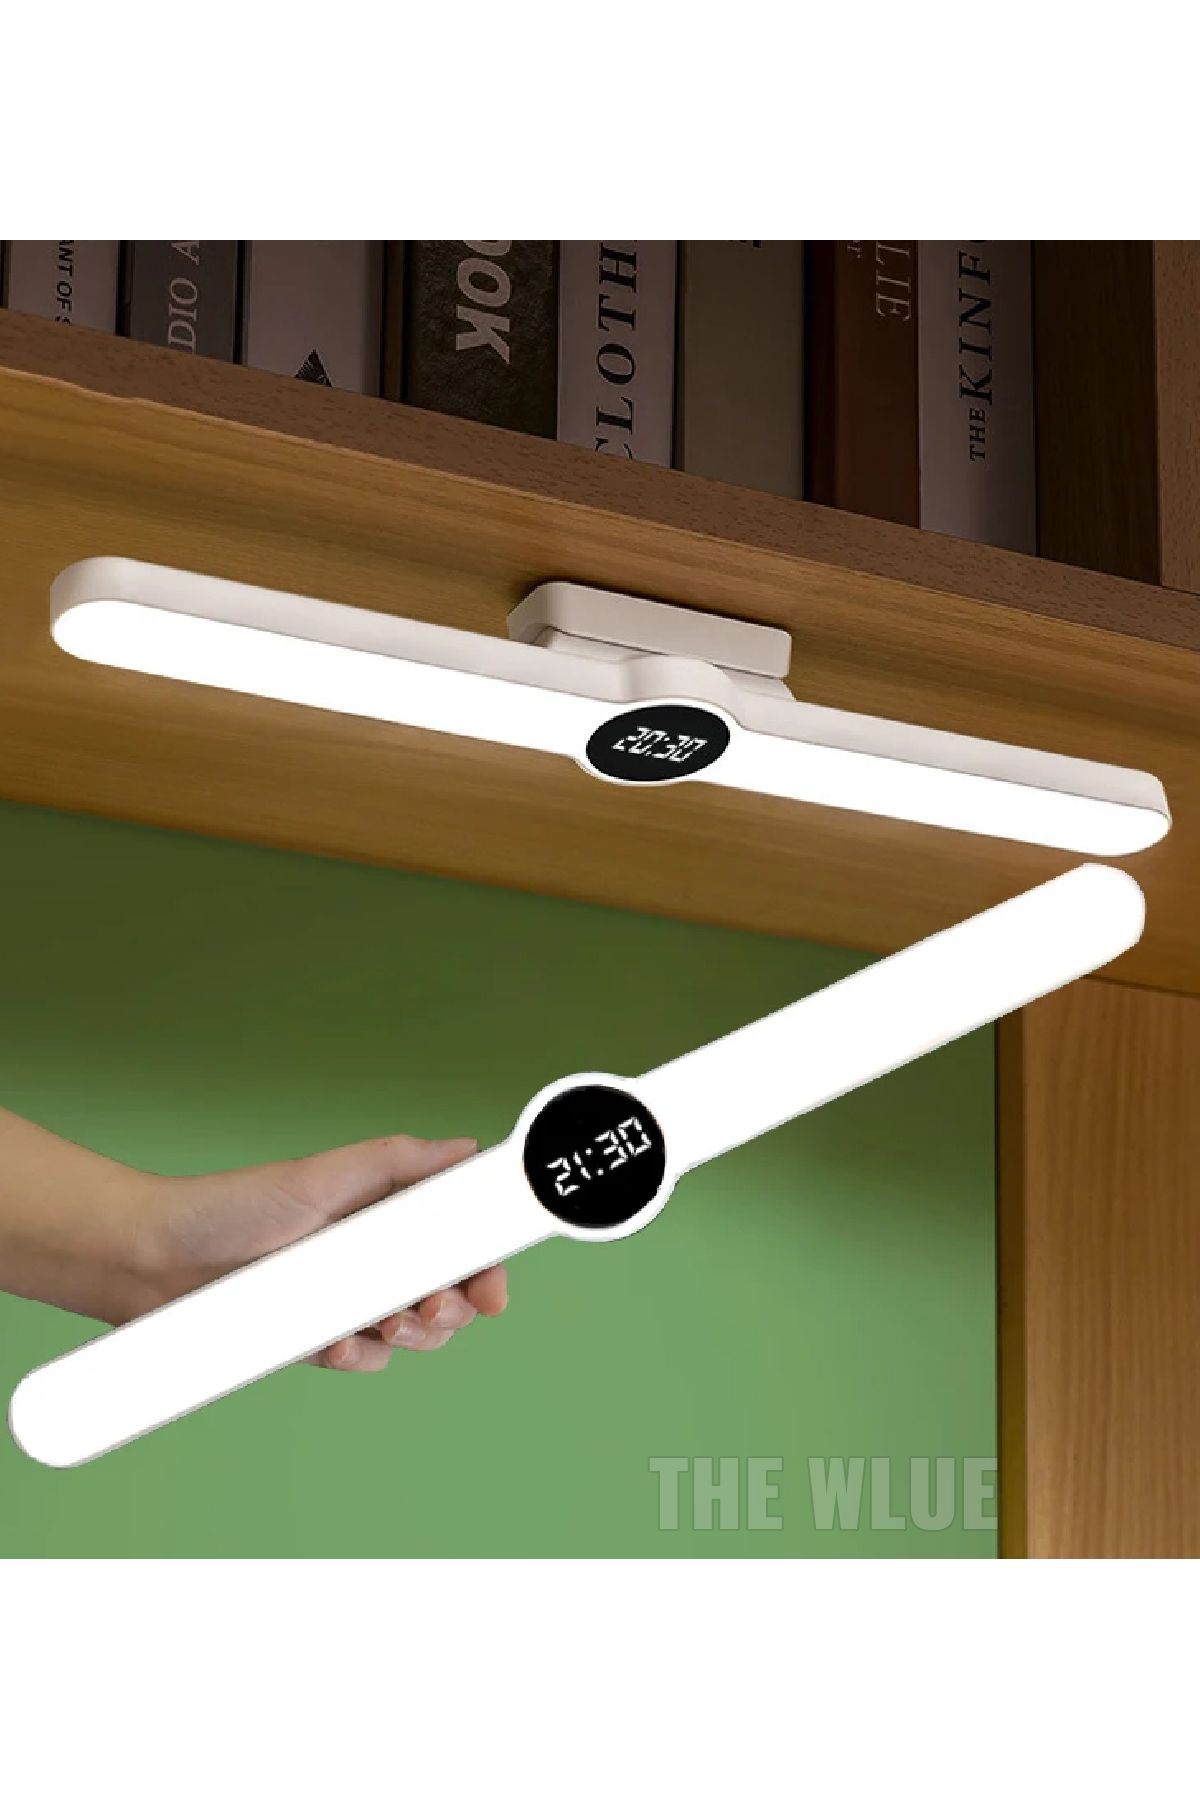 The Wlue ŞARJLI Mıknatıslı Kitaplık Dolap İçi Raf Altı LED Aydınlatma Masa Lambası Çalışma Işığı